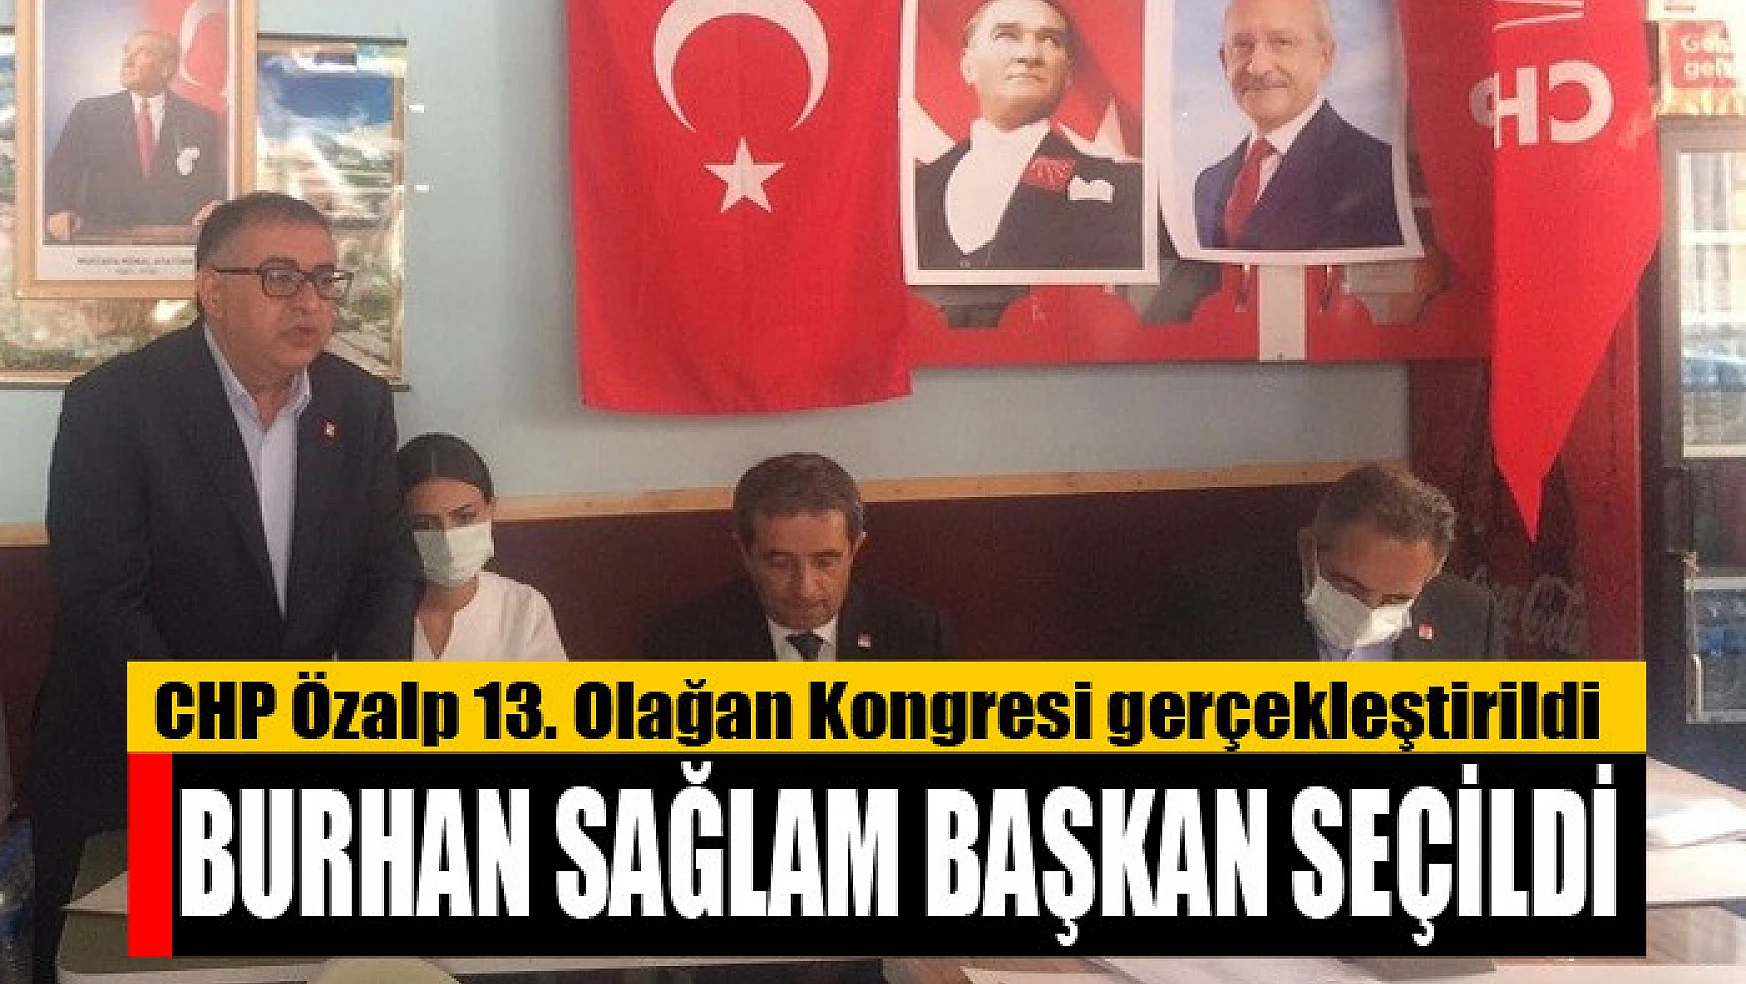 CHP Özalp İlçe Olağan Kongresi gerçekleştirildi Burhan Sağlam başkan seçildi